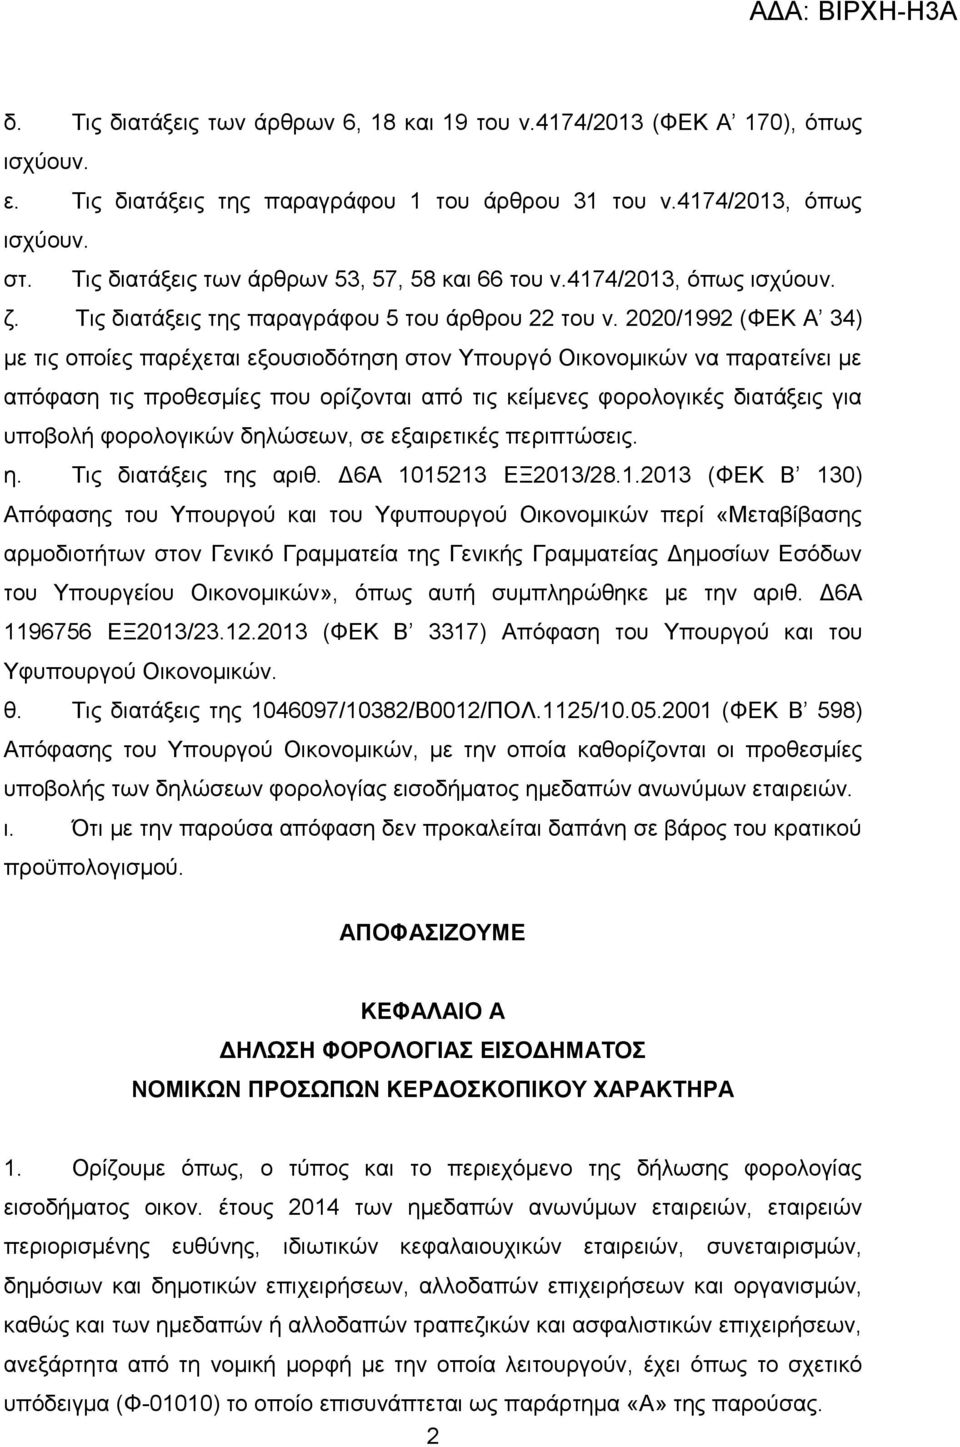 2020/1992 (ΦΕΚ A 34) με τις οποίες παρέχεται εξουσιοδότηση στον Υπουργό Οικονομικών να παρατείνει με απόφαση τις προθεσμίες που ορίζονται από τις κείμενες φορολογικές διατάξεις για υποβολή